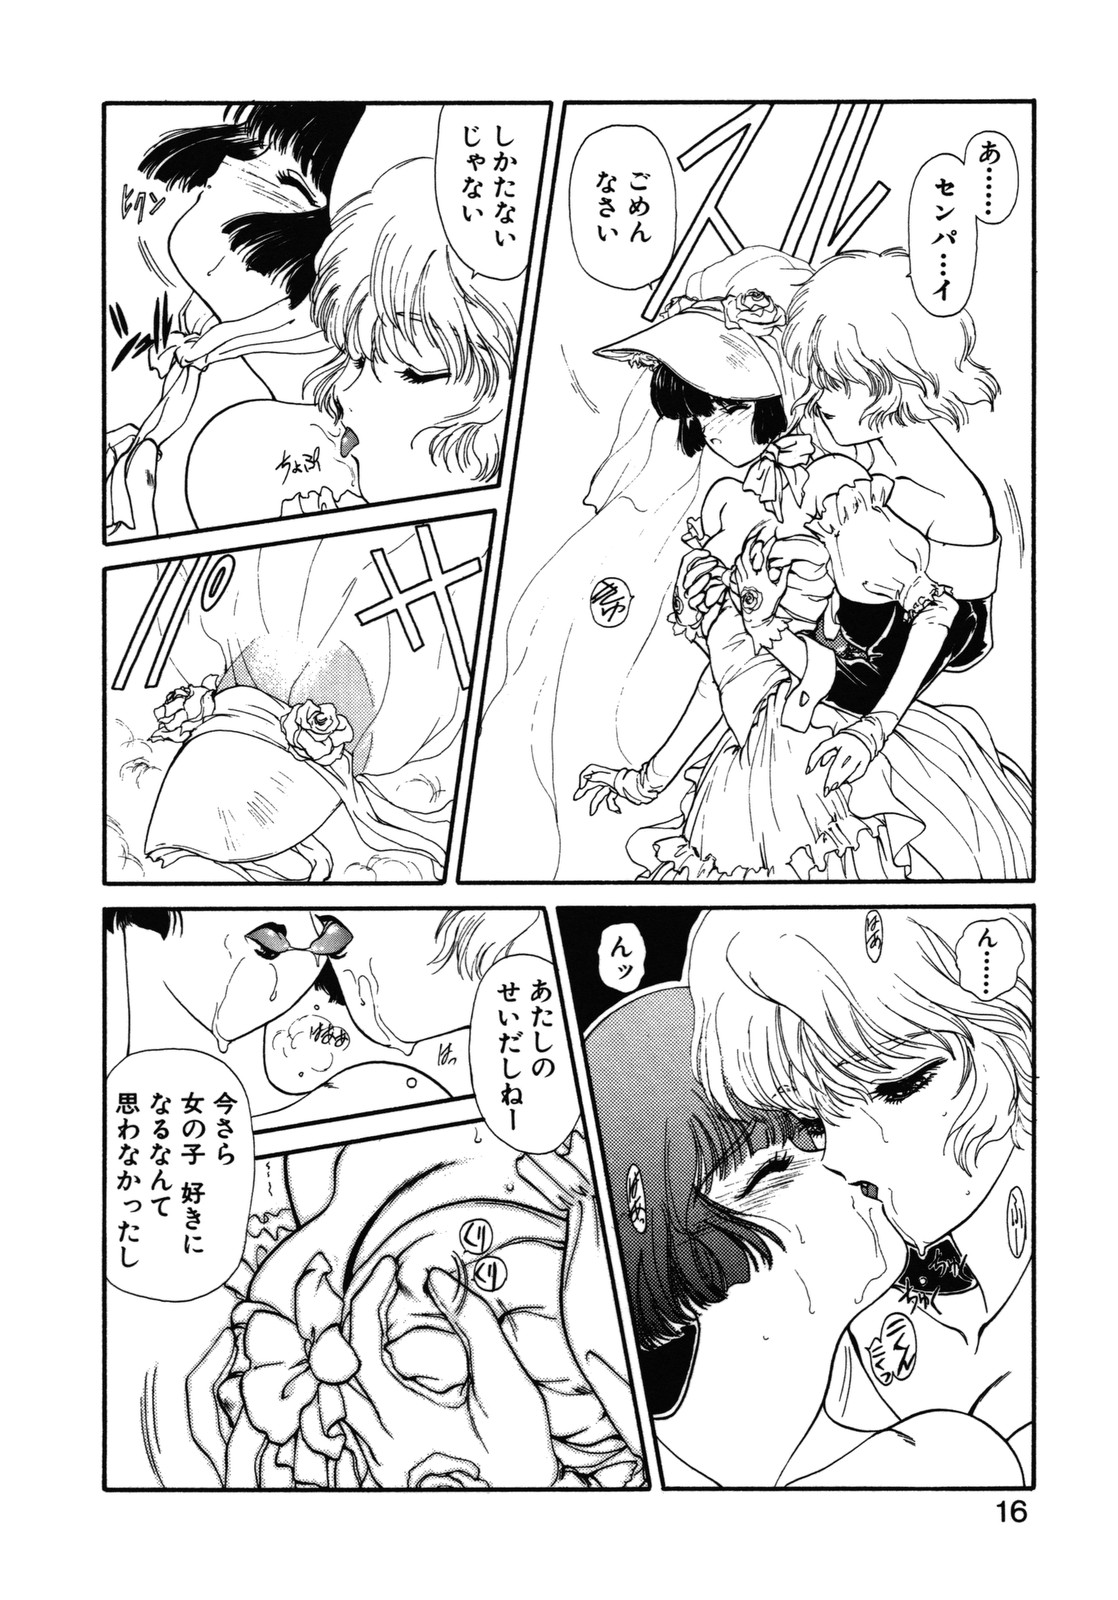 [Utatane Hiroyuki] COUNT DOWN page 17 full